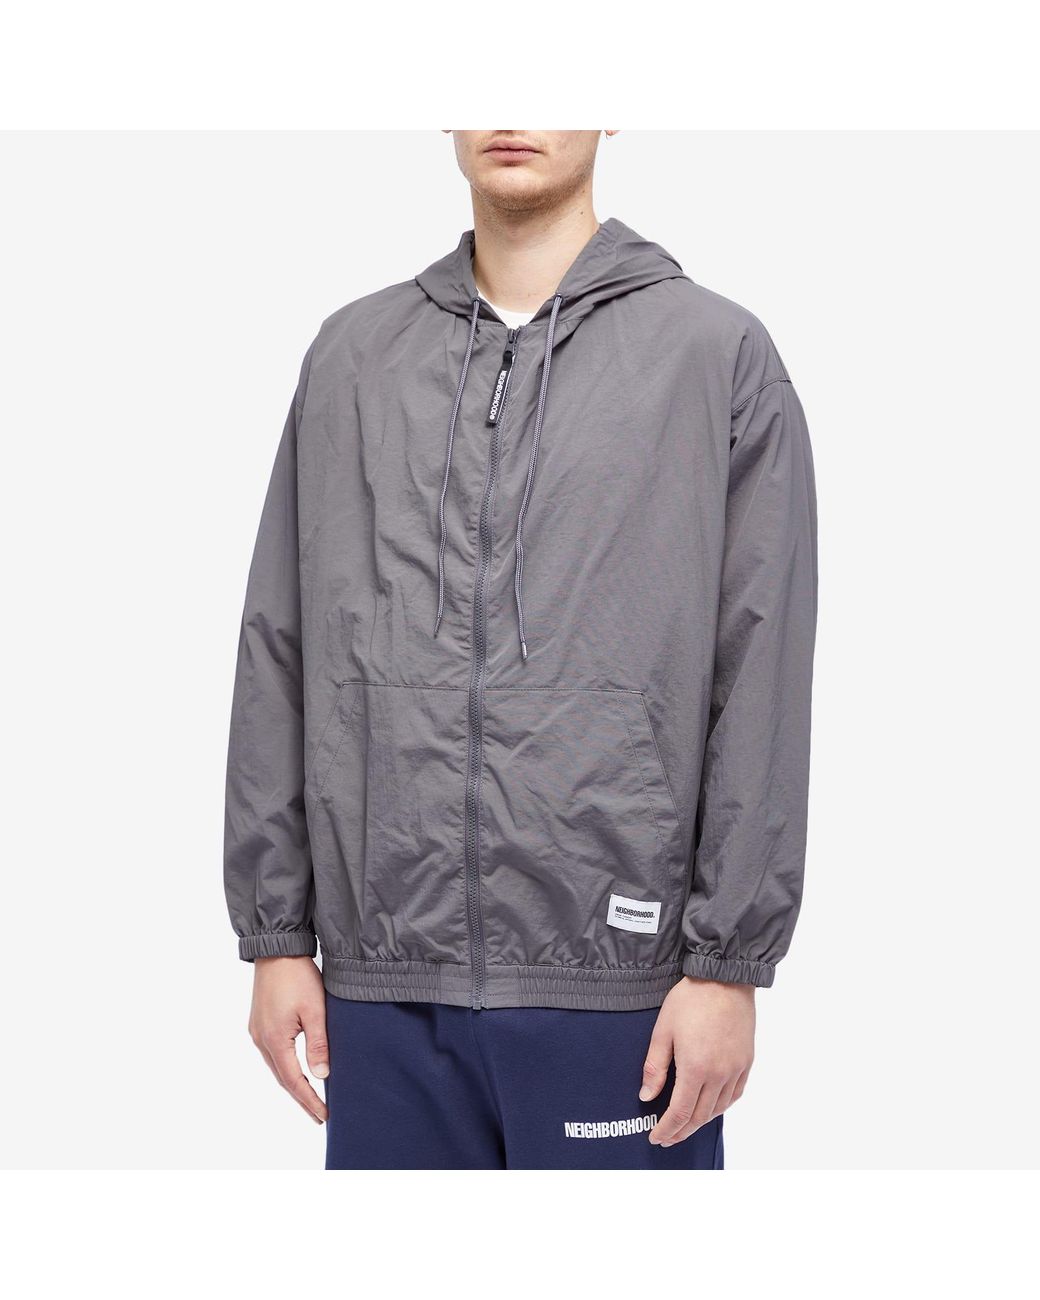 Neighborhood Hooded Zip Up Jacket in Gray for Men   Lyst